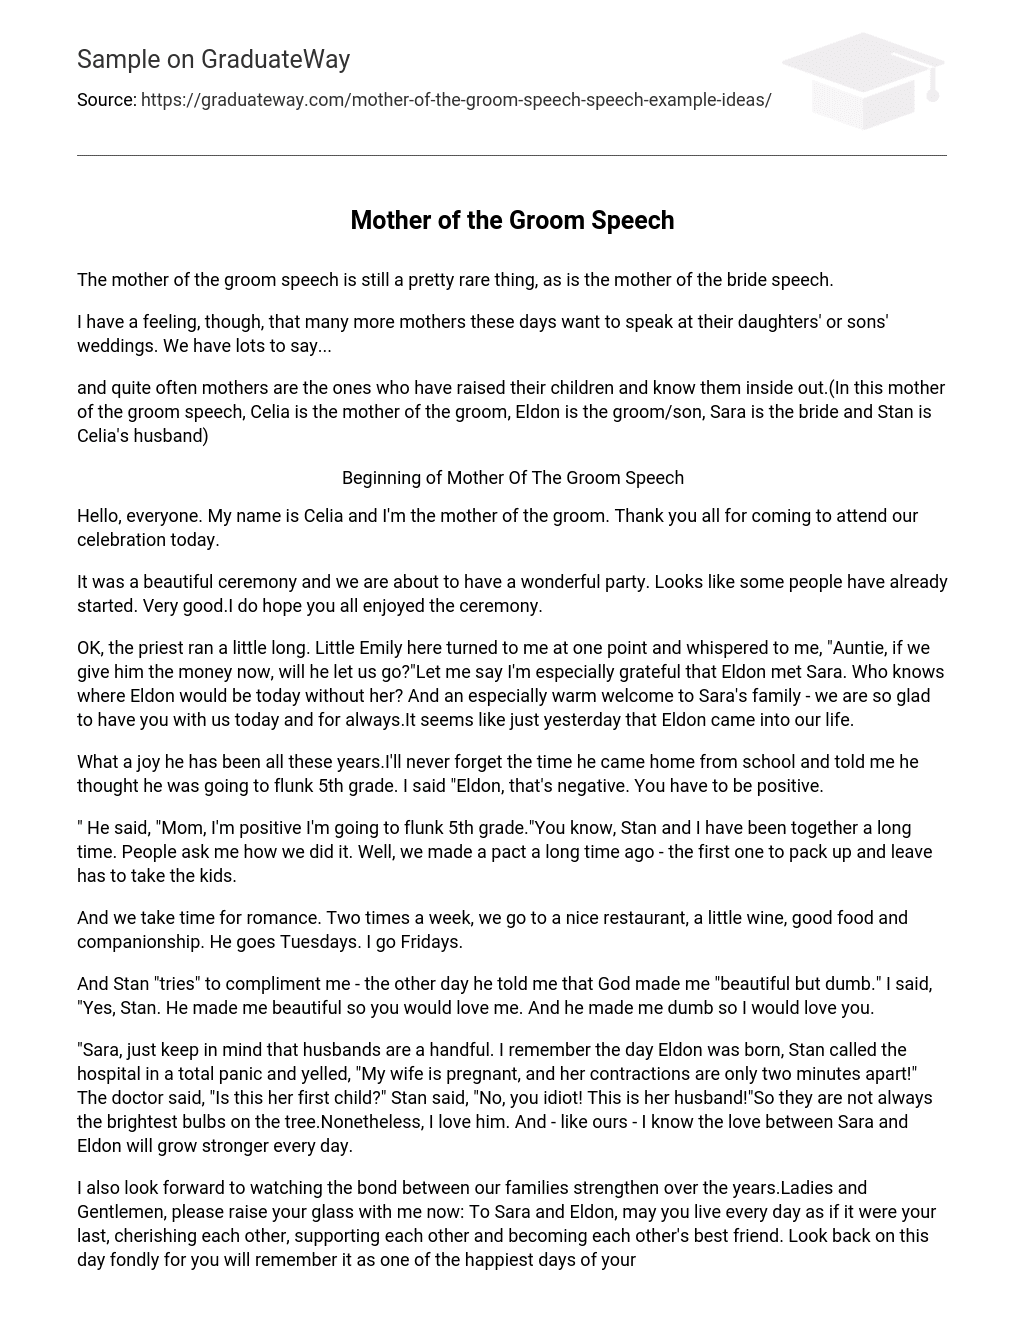 Groom’s Mother’s Speech Writing Assignment